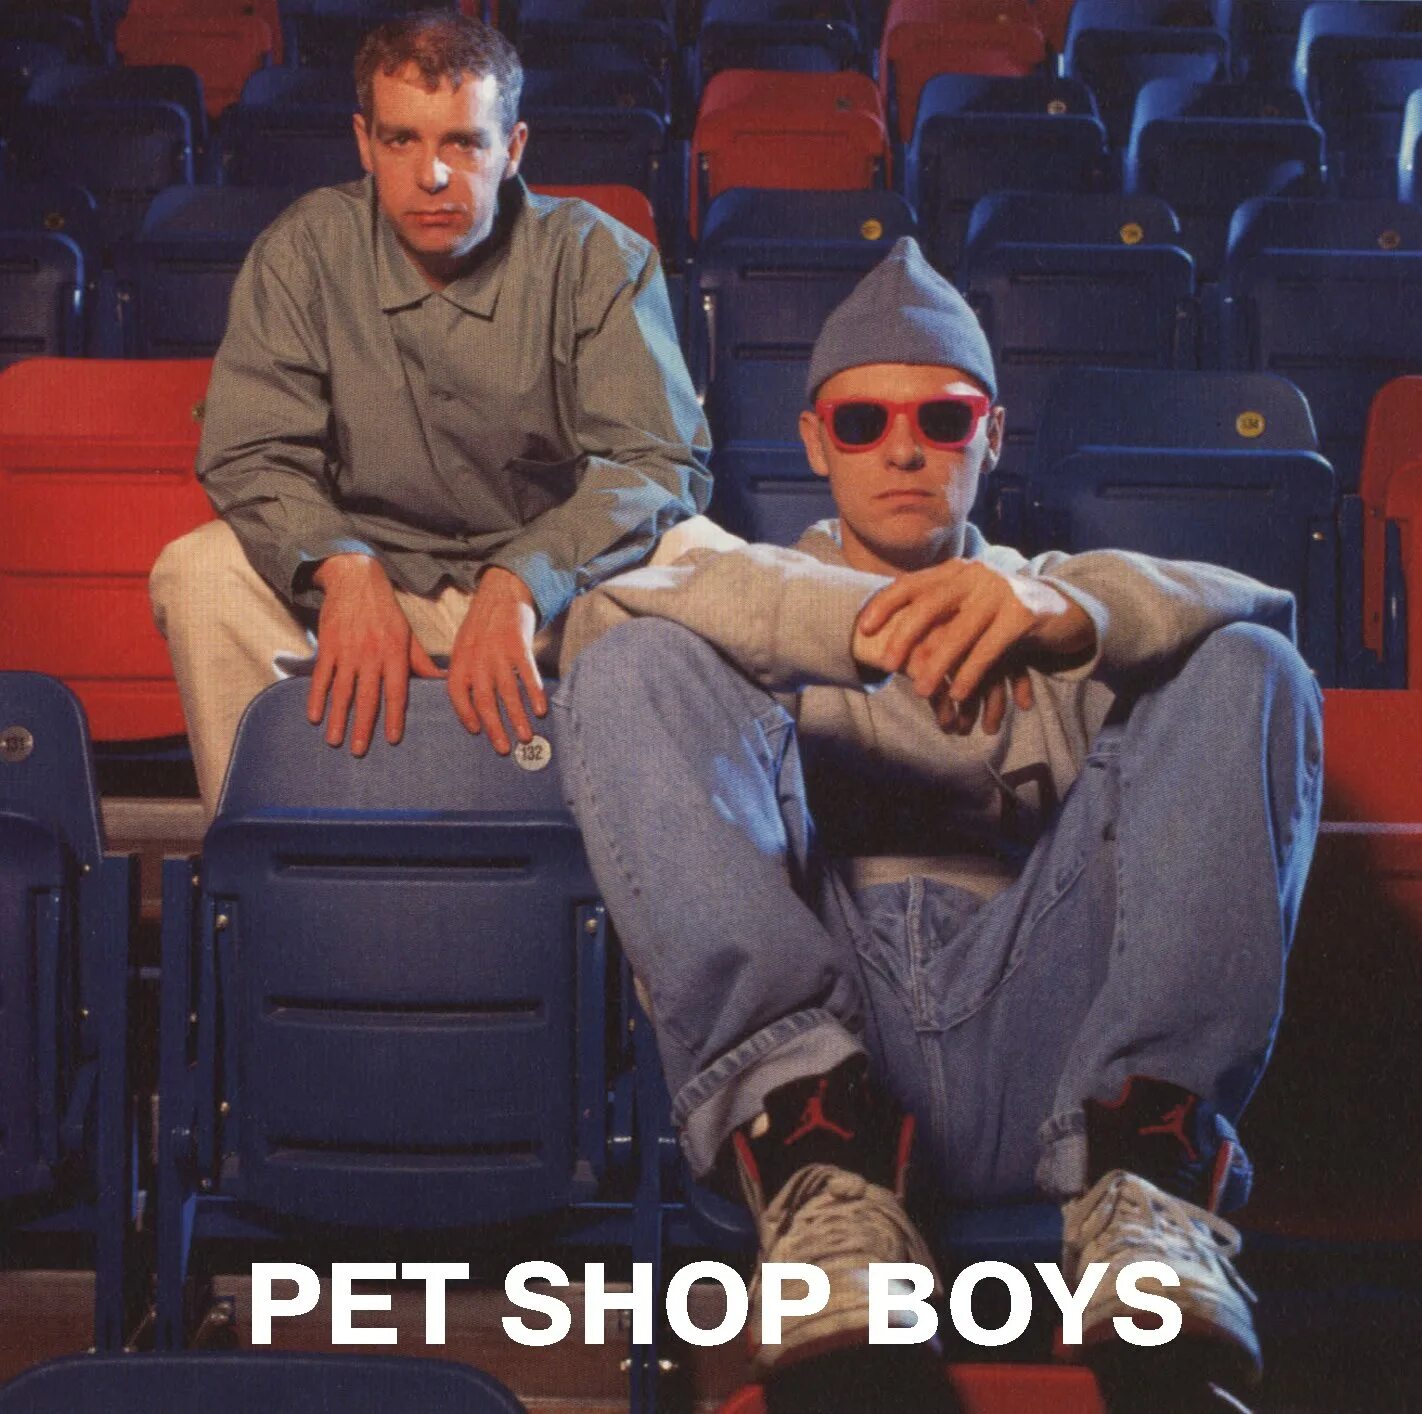 Пет шоп бойс хиты. Pet shop boys. Pet shop boys фото. Pet shop boys Single. Pet shop boys хиты.